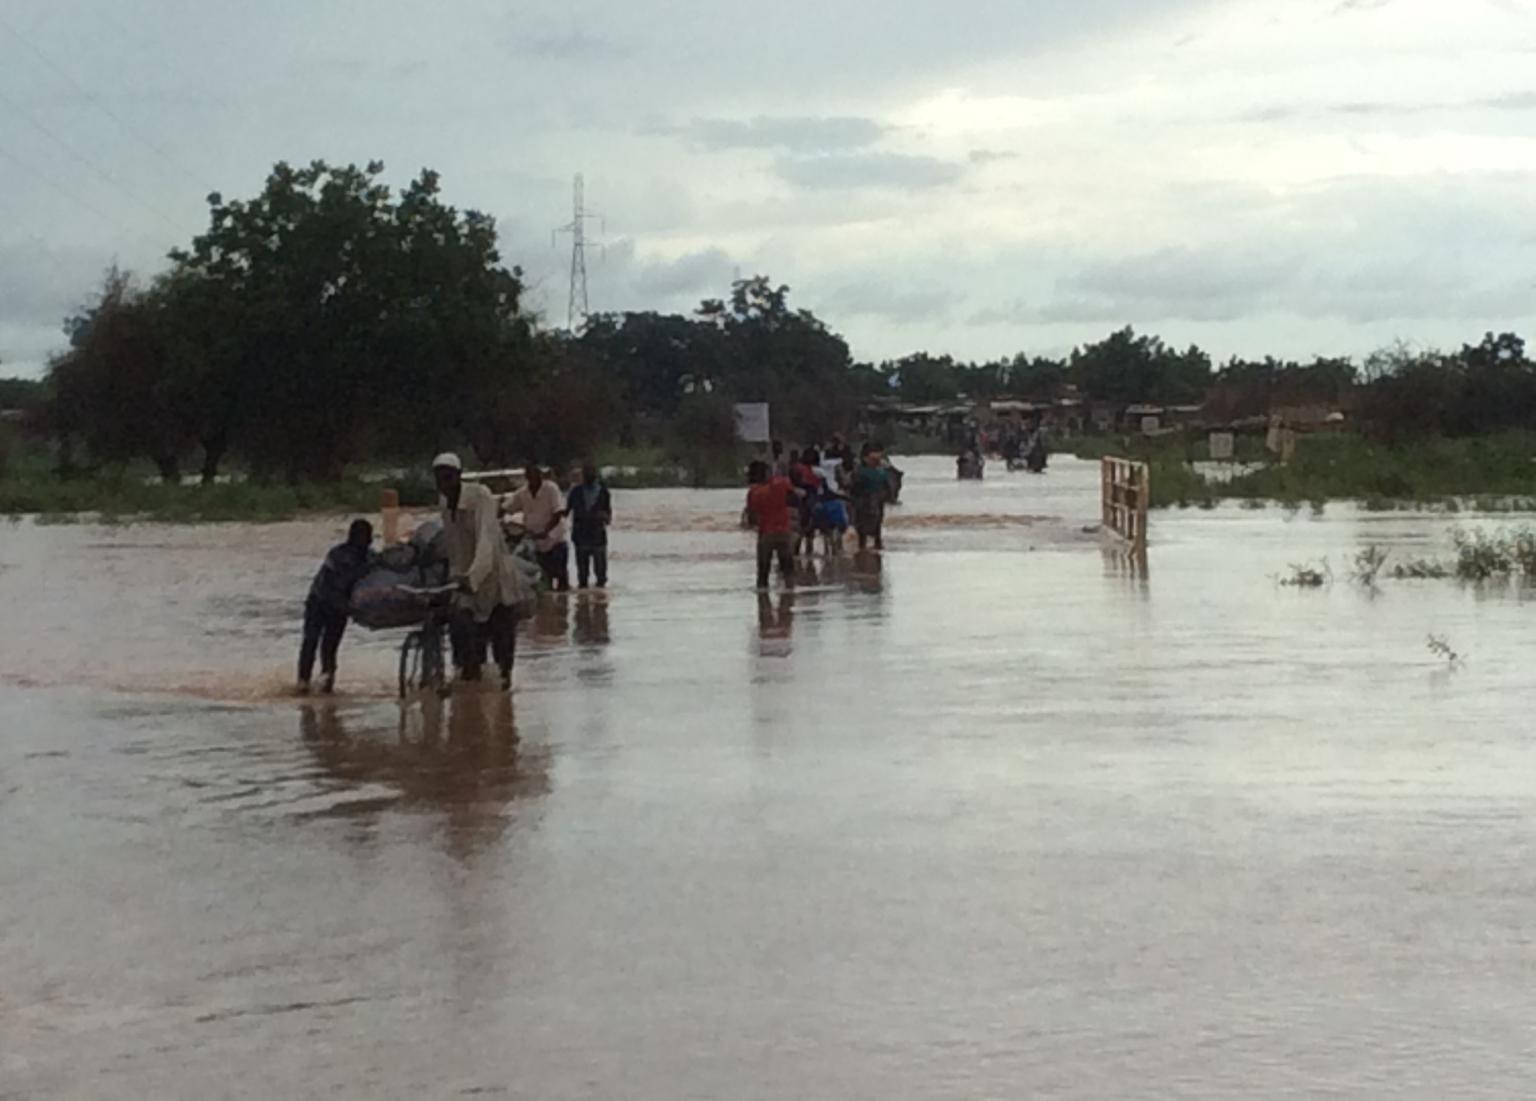 Flooding in Ouagadougou